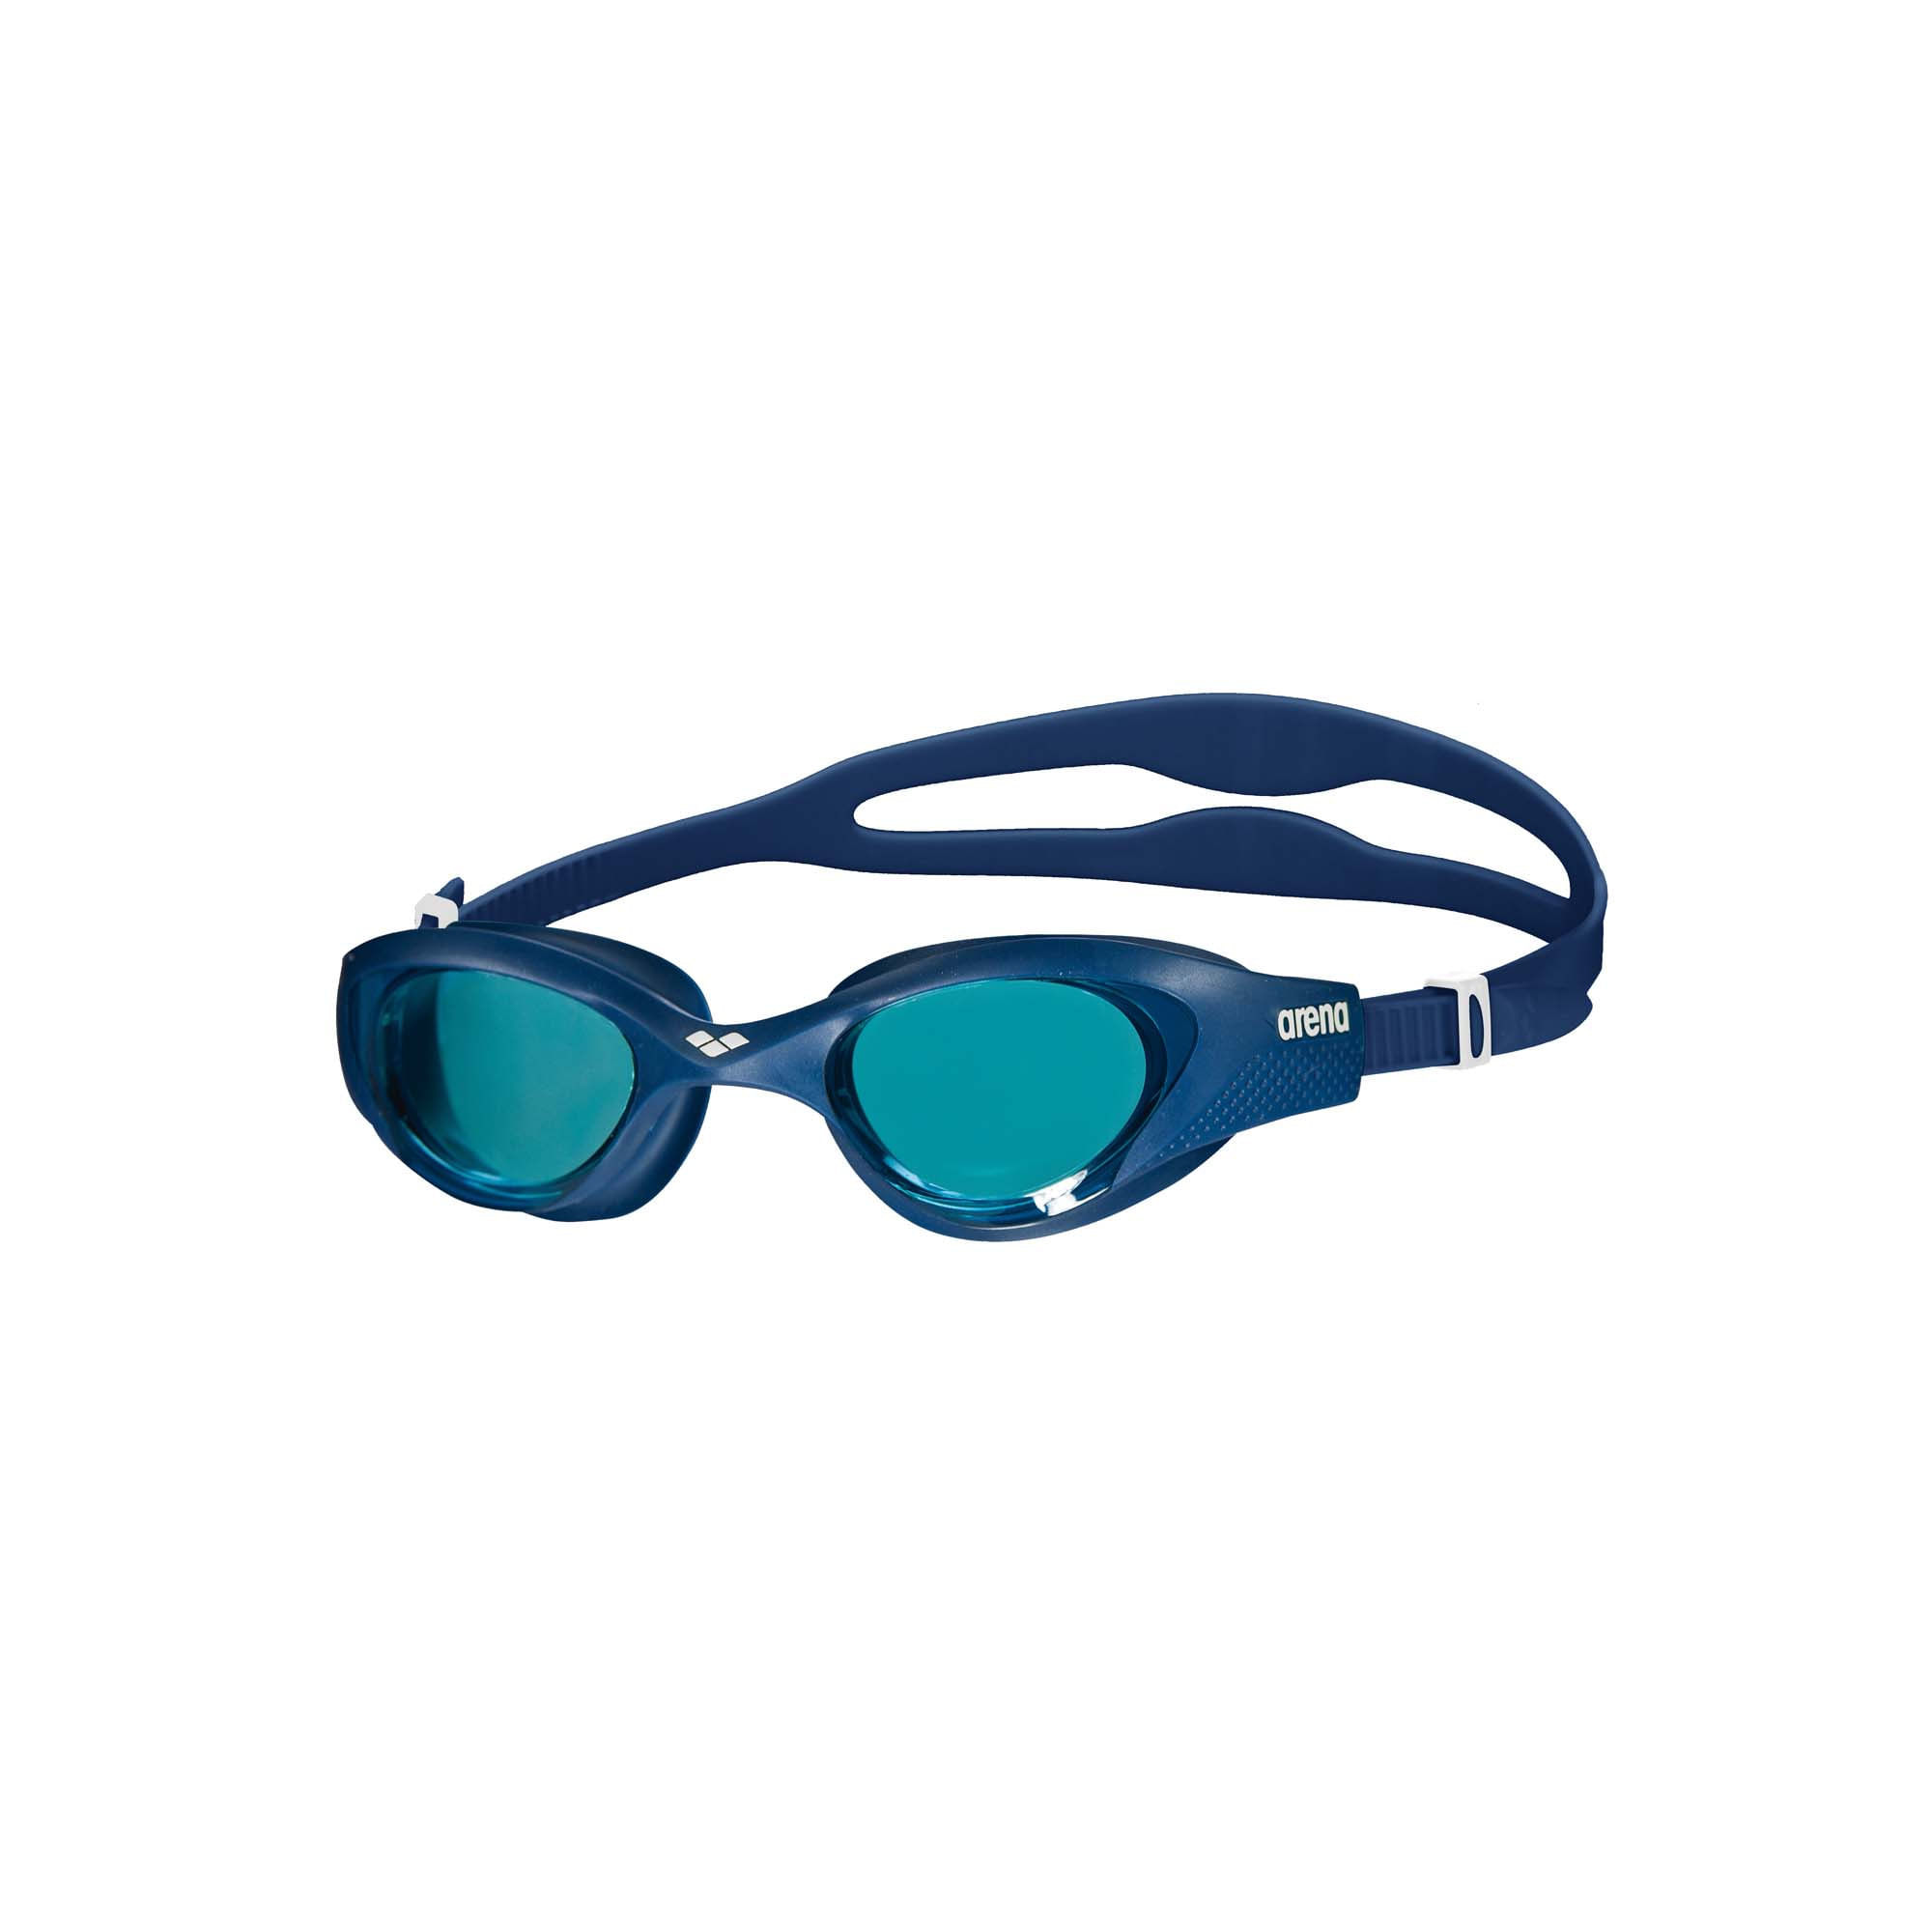 Mejores gafas inteligentes de natación que puedes comprar